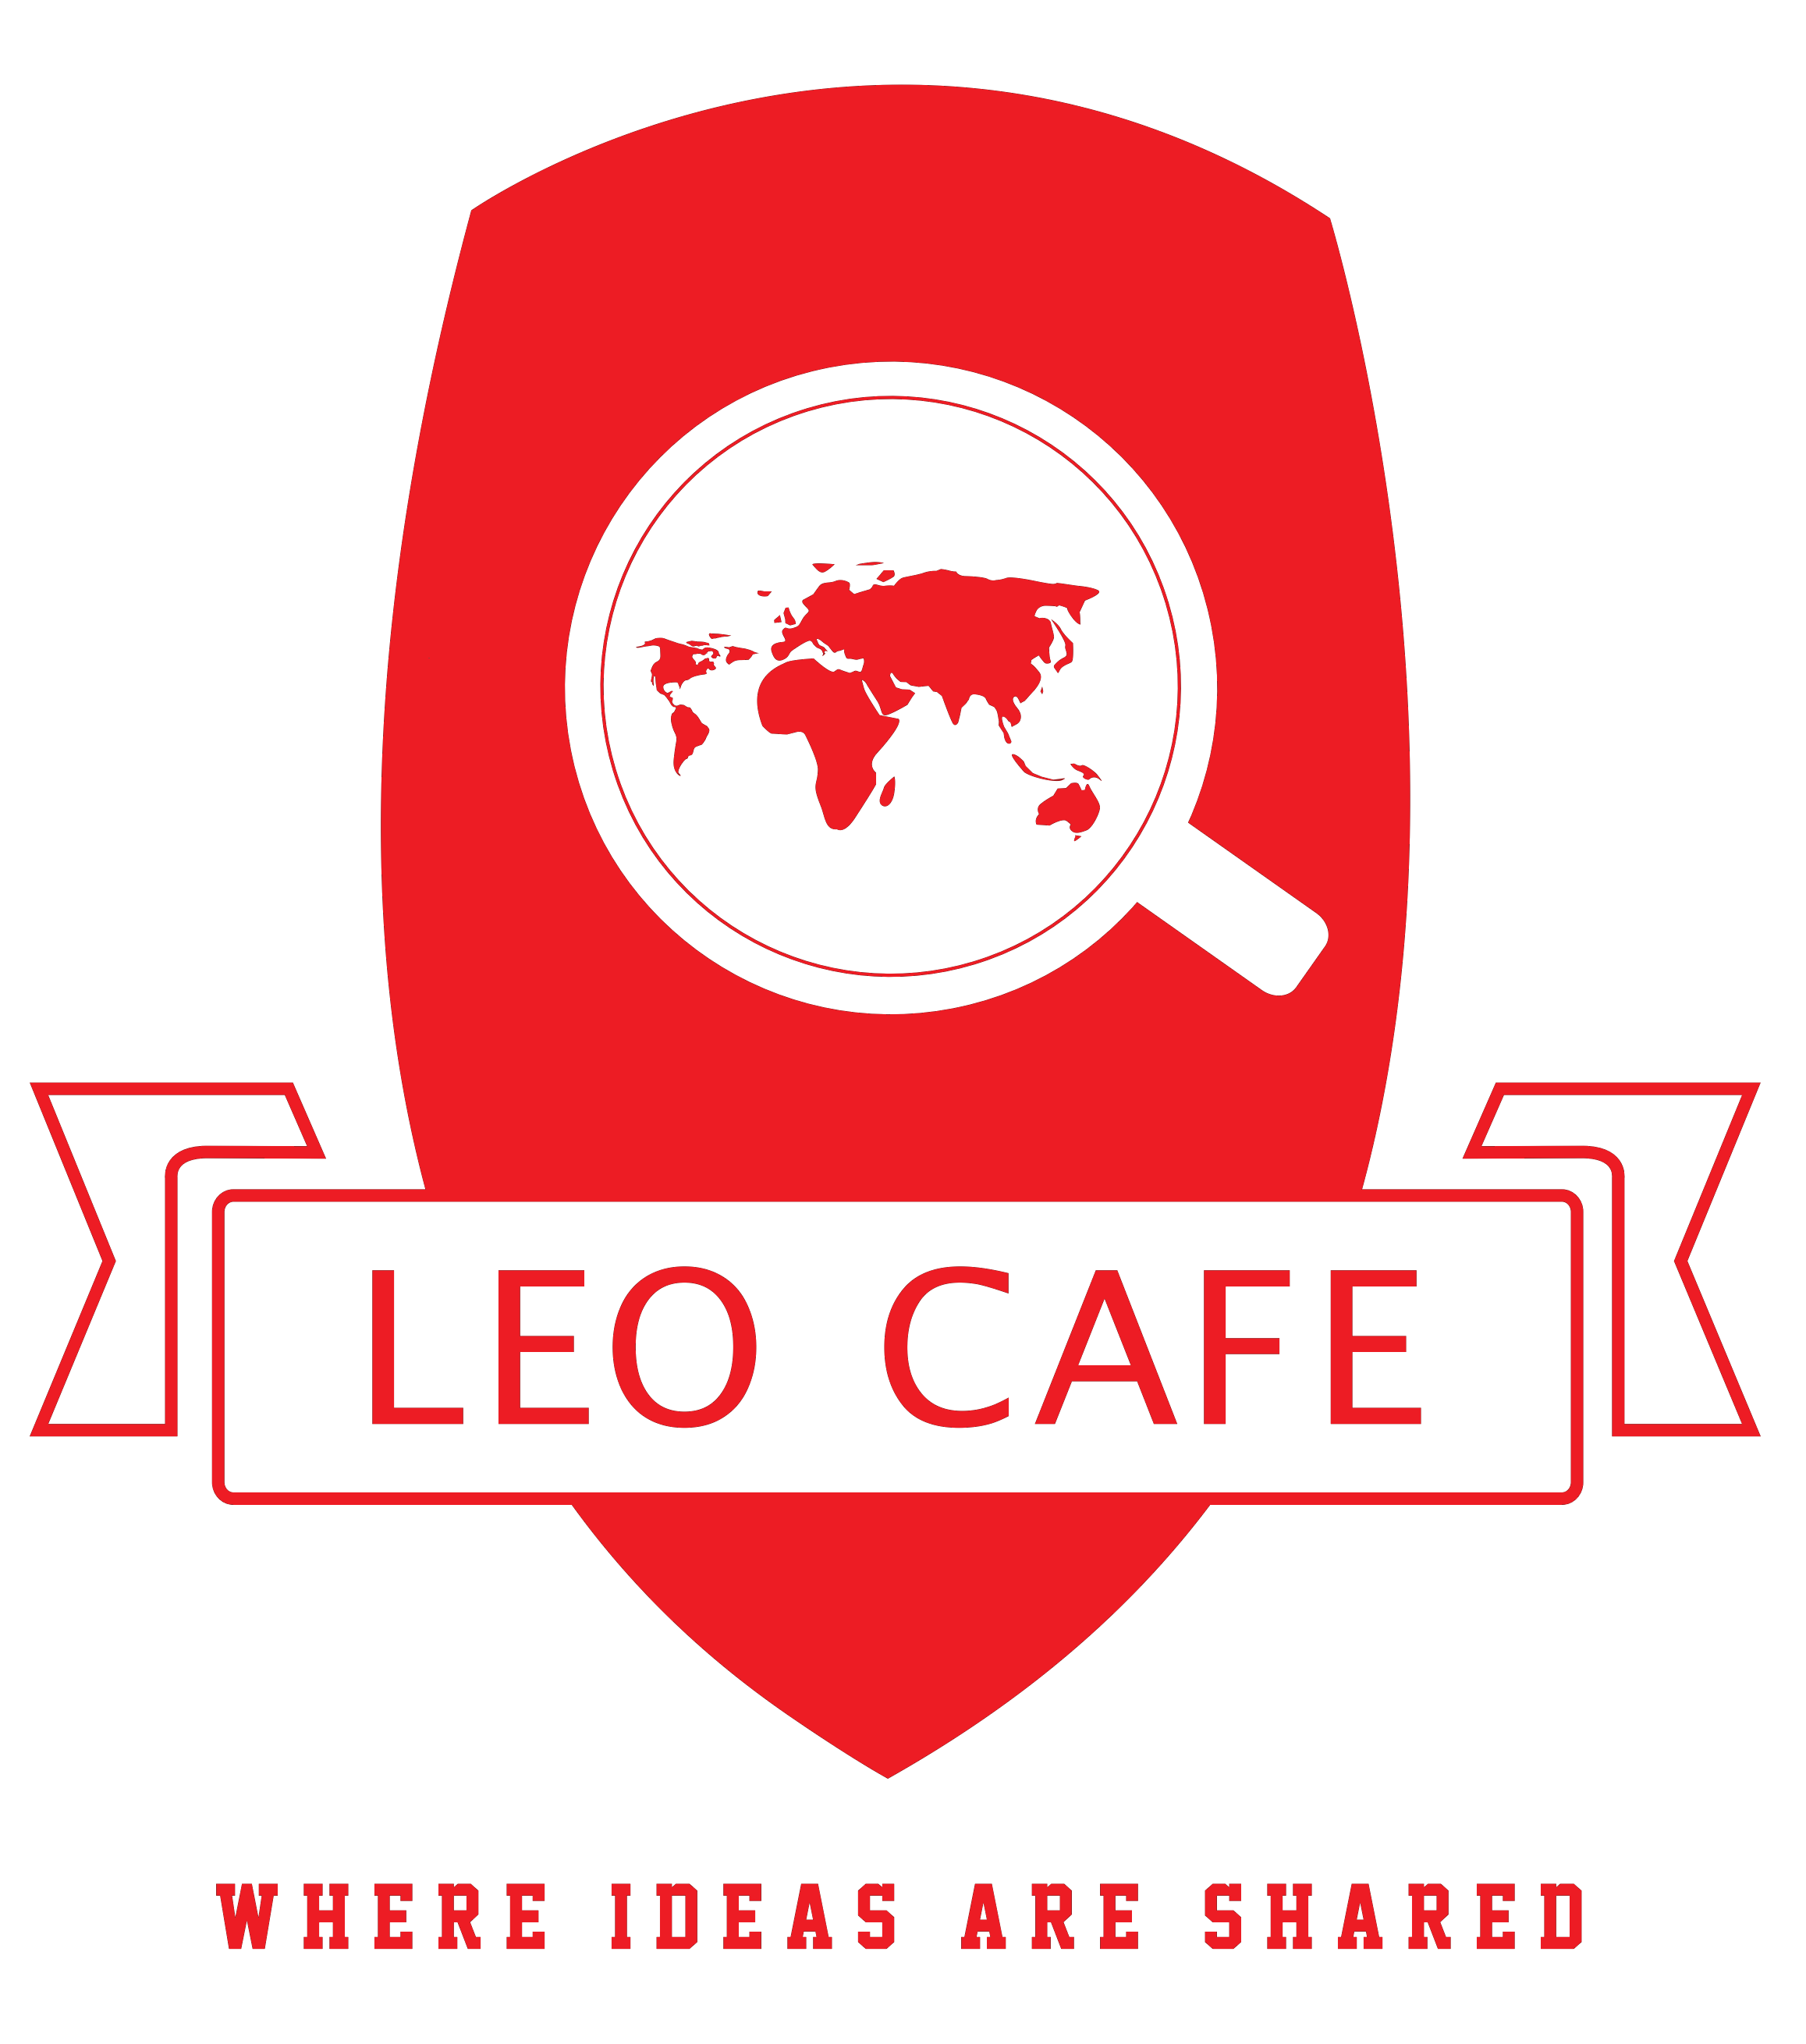 ลีโอคาเฟ่ (Leo Cafe) logo โลโก้